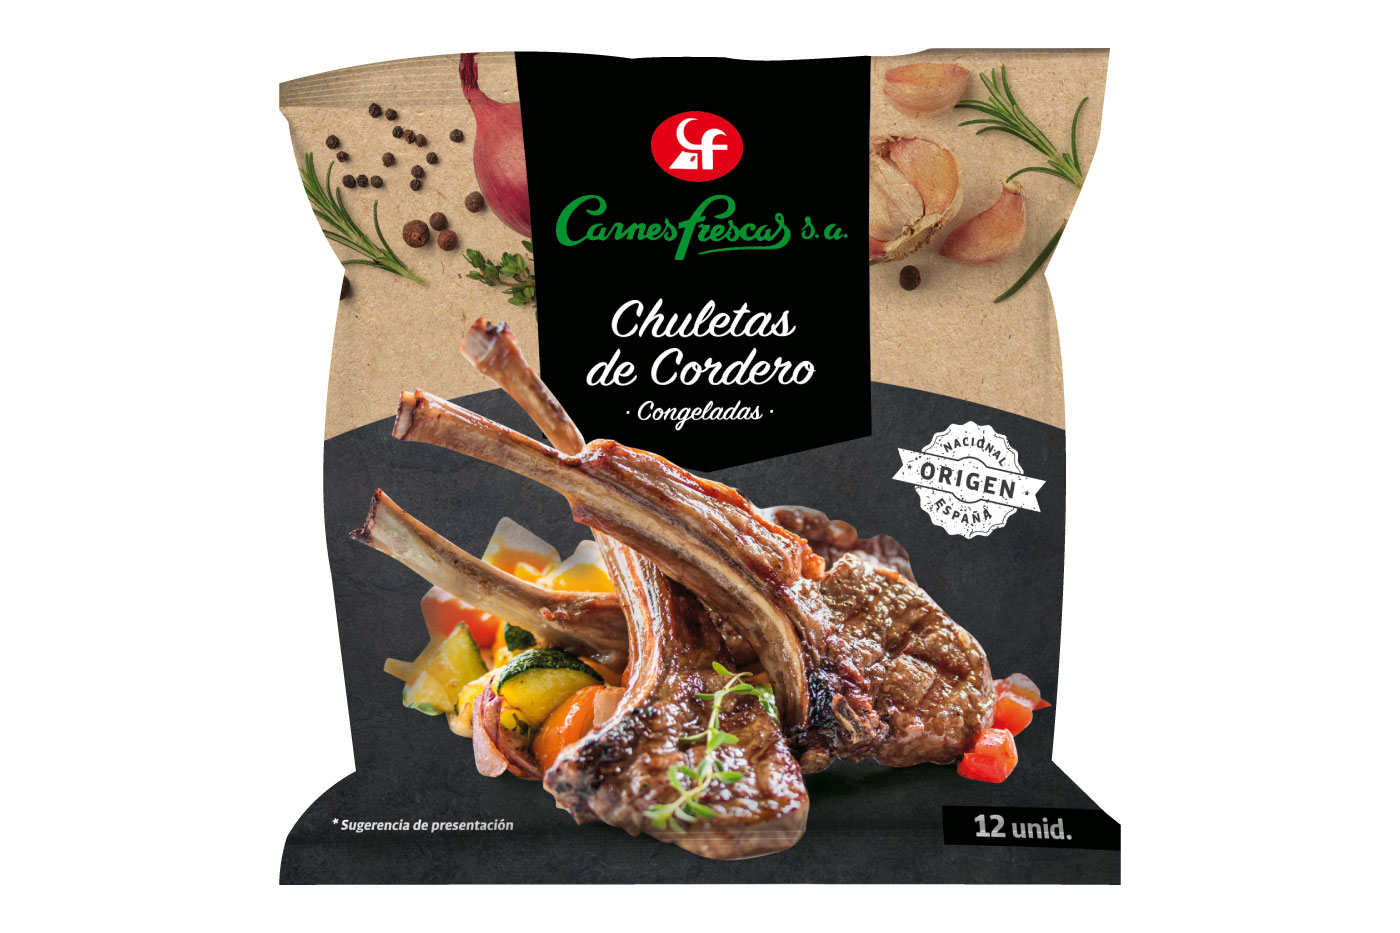 CHULETAS DE CORDERO CARNES FRESCAS packaging